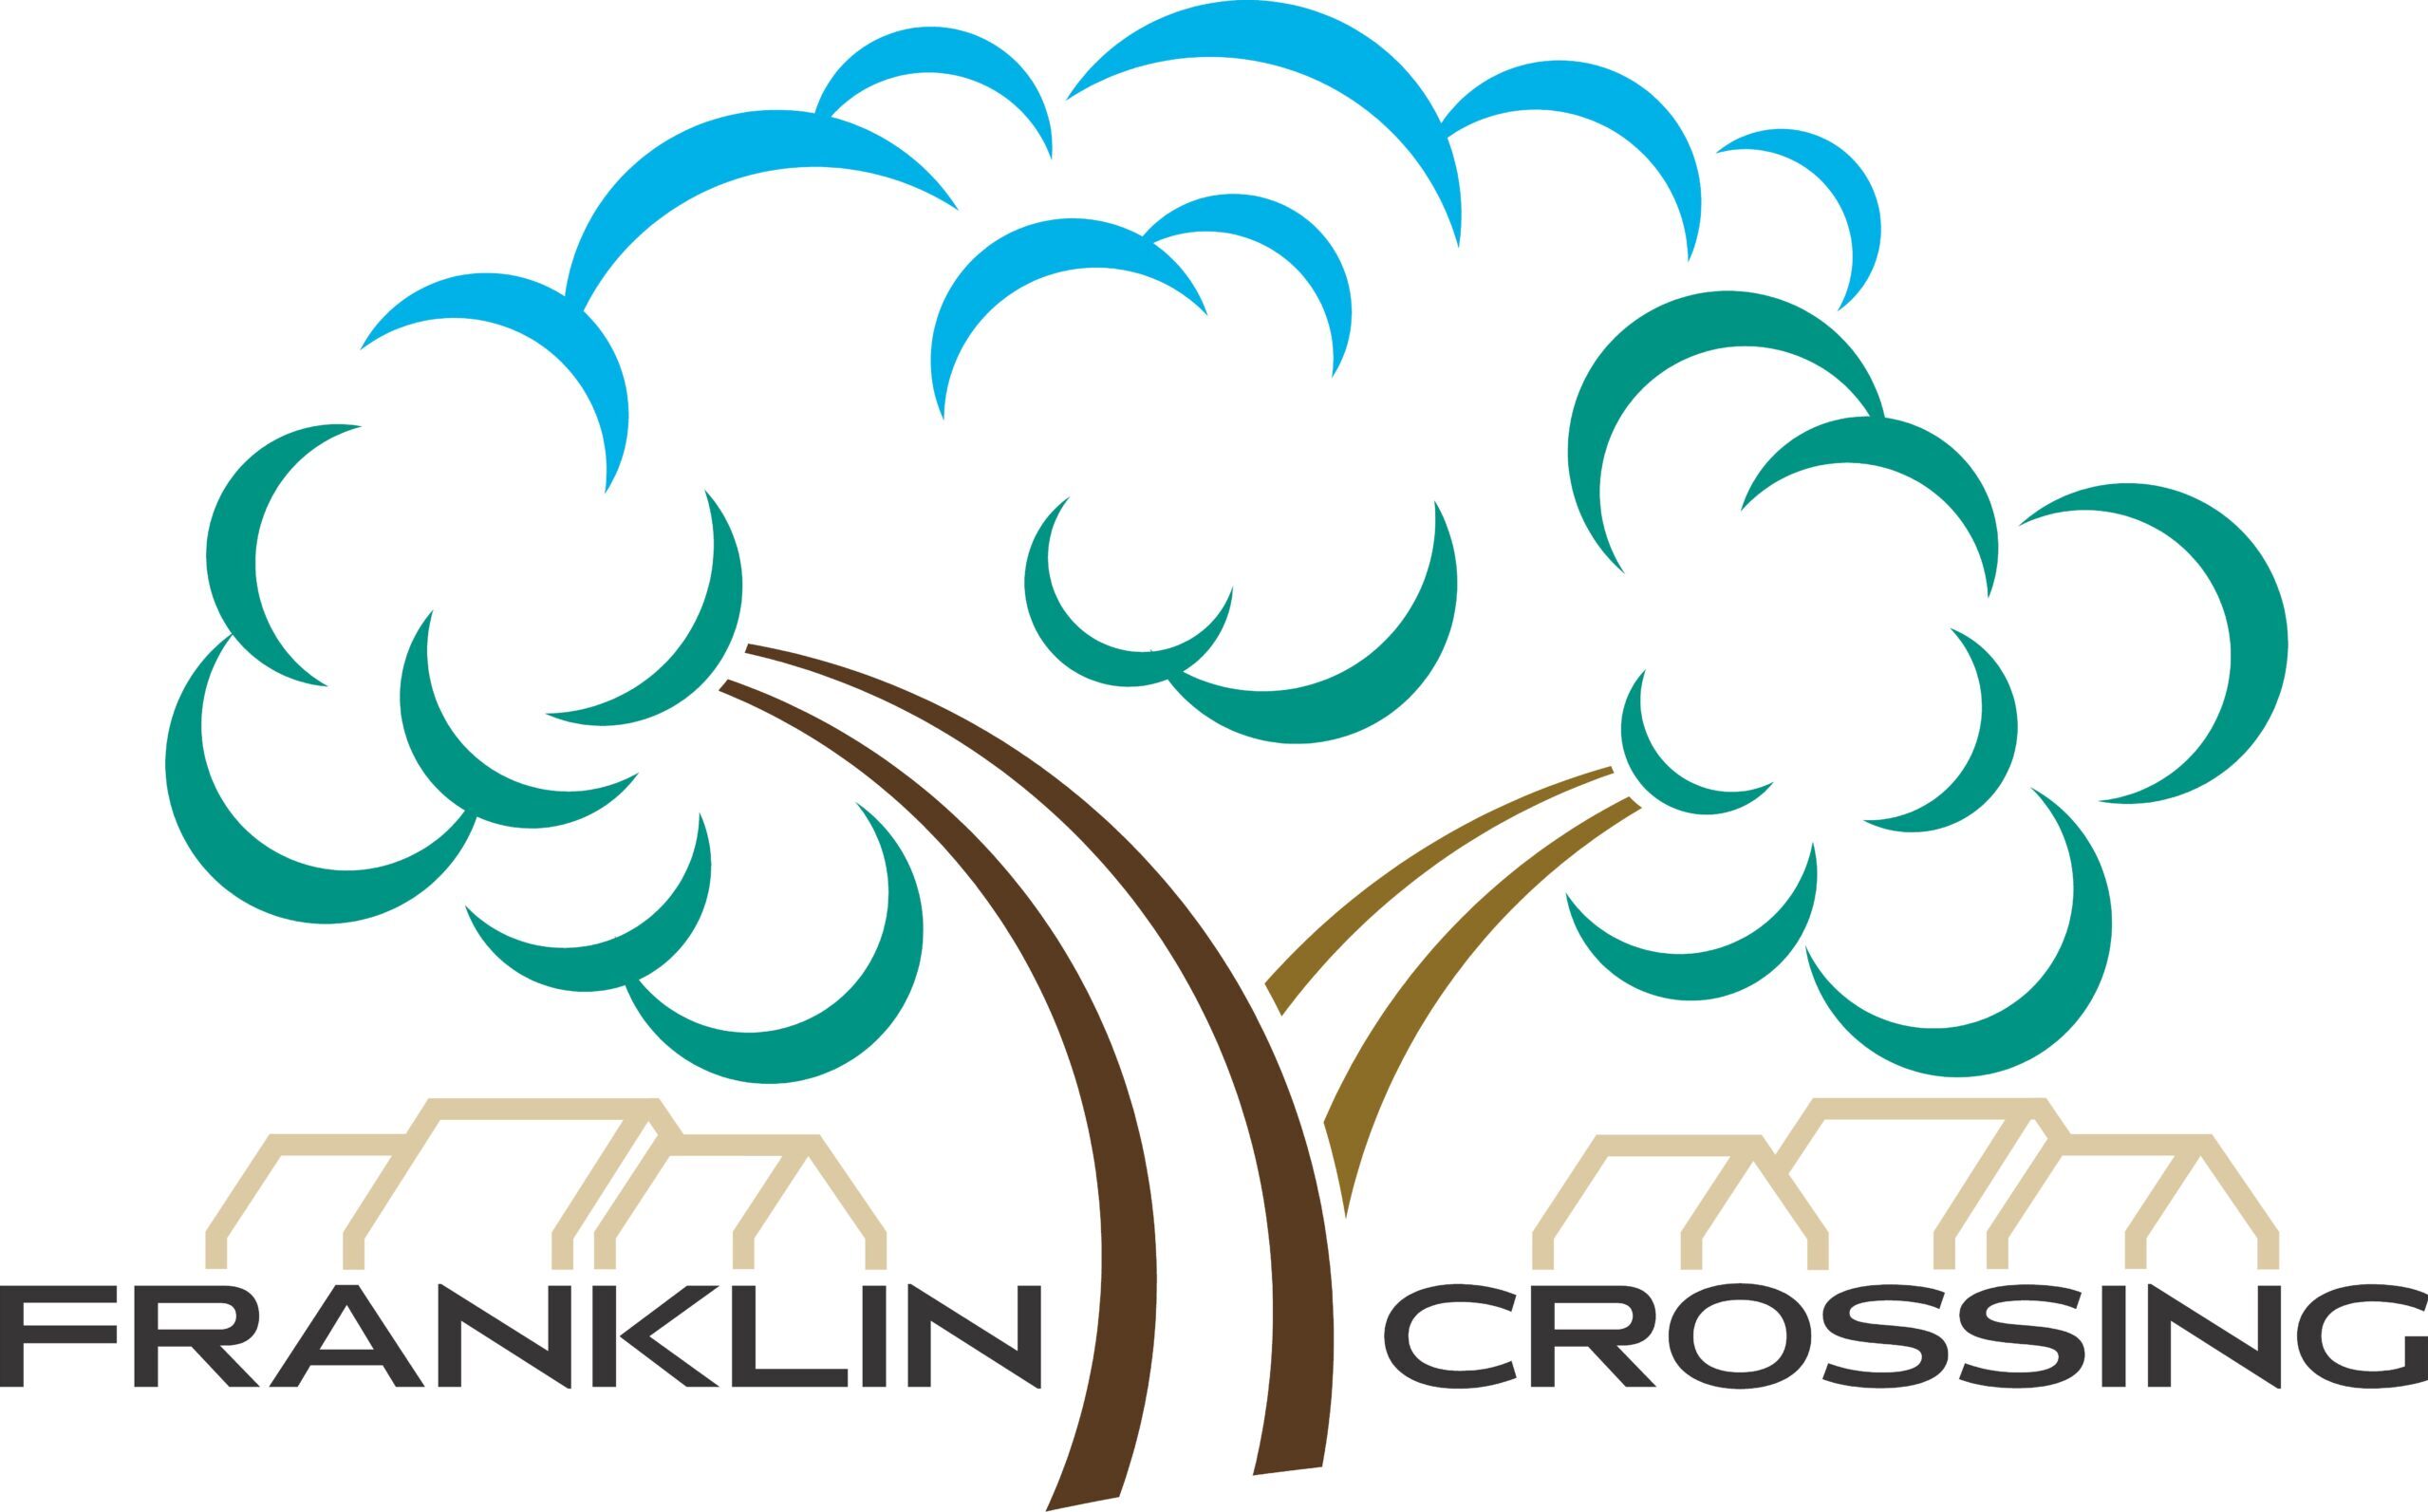 Franklin Crossing Neighbourhood Association